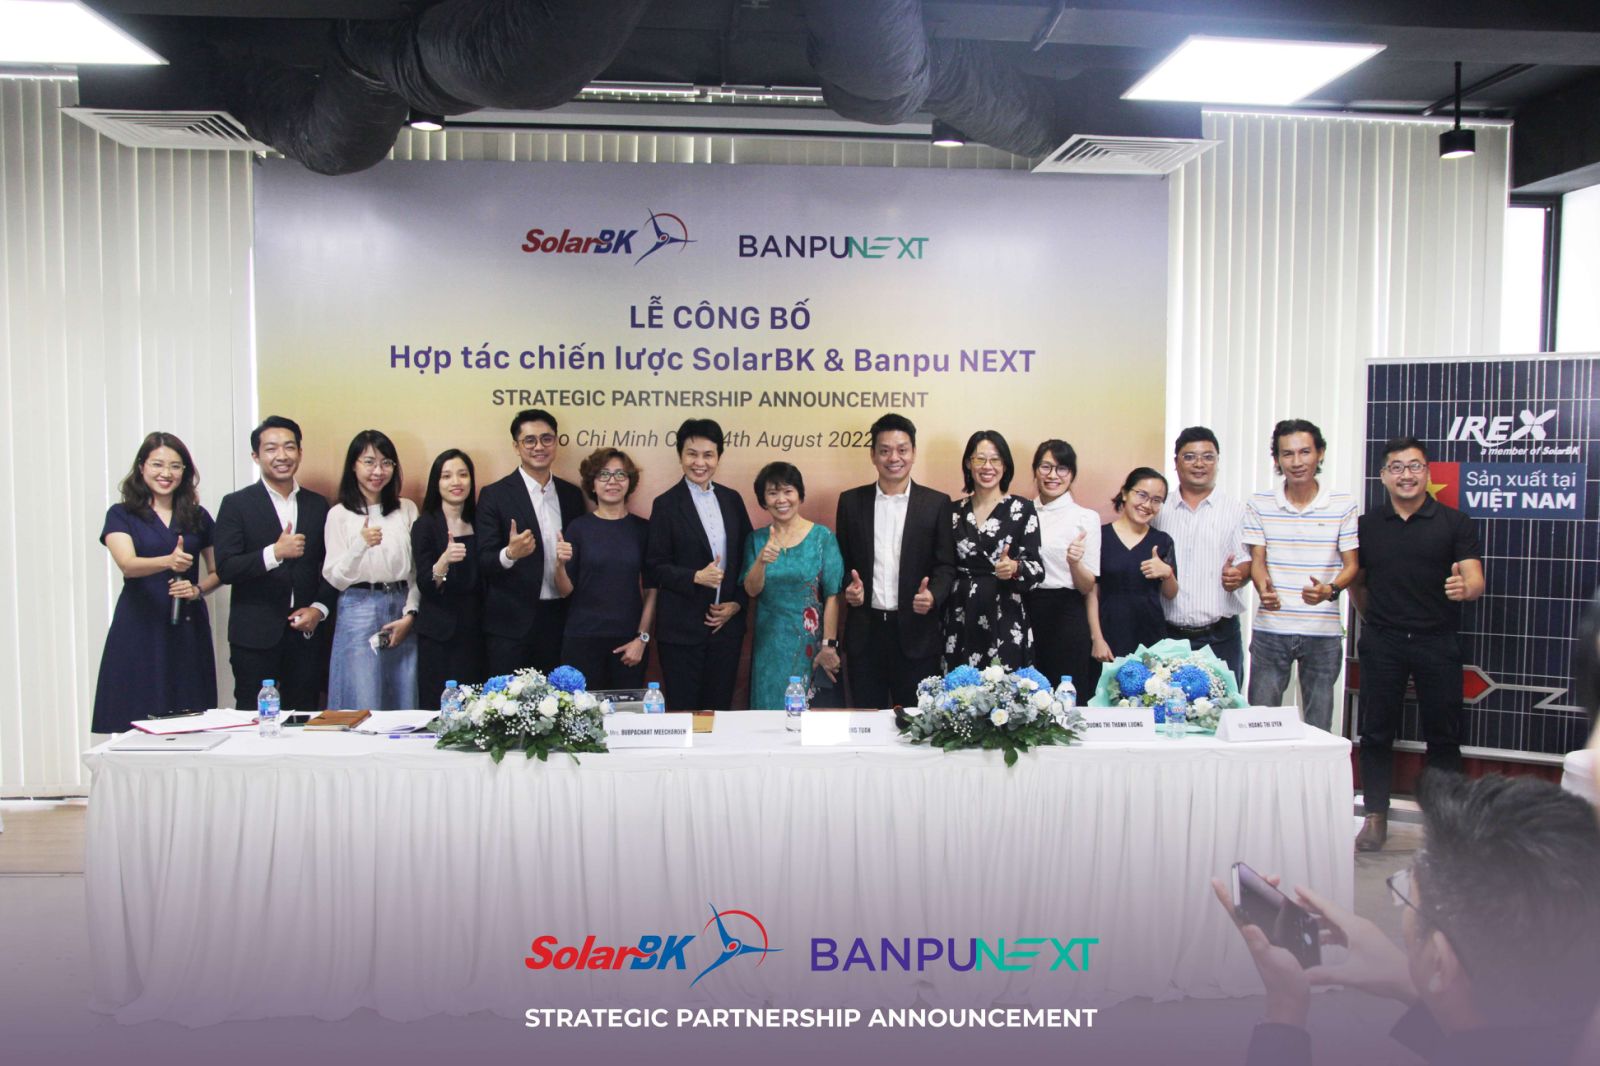 THÔNG CÁO BÁO CHÍ: SolarBK và BANPU NEXT thoả thuận đầu tư để thúc đẩy phát triển năng lượng sạch tại Việt Nam